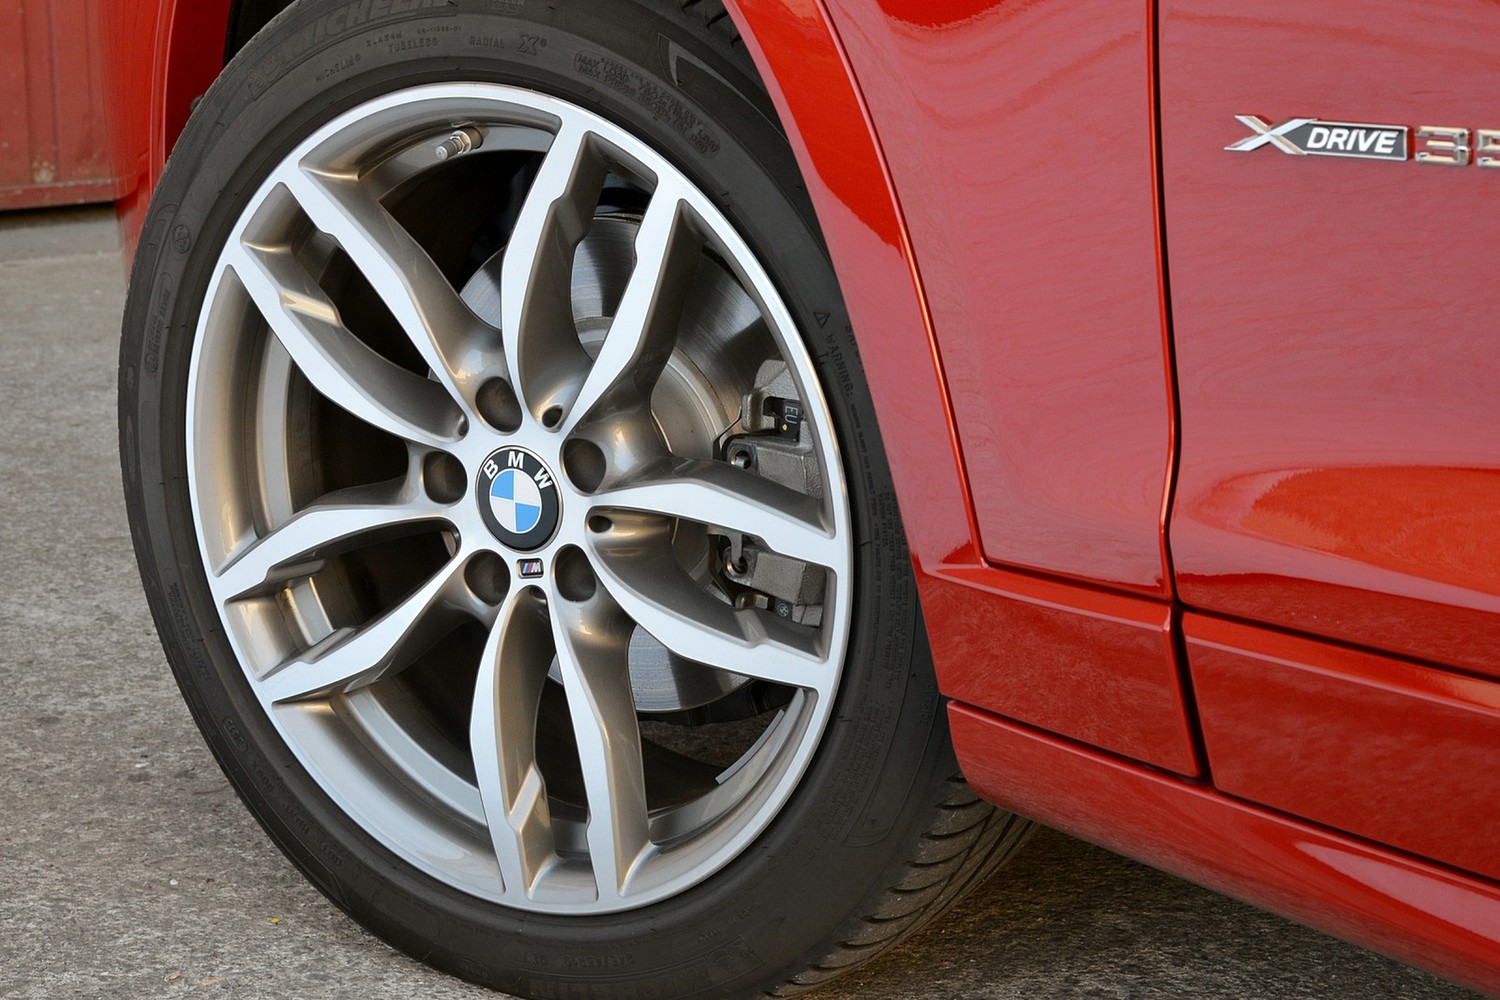 BMW X4 xDrive35i 4dr SUV Wheel (2015 model year shown)